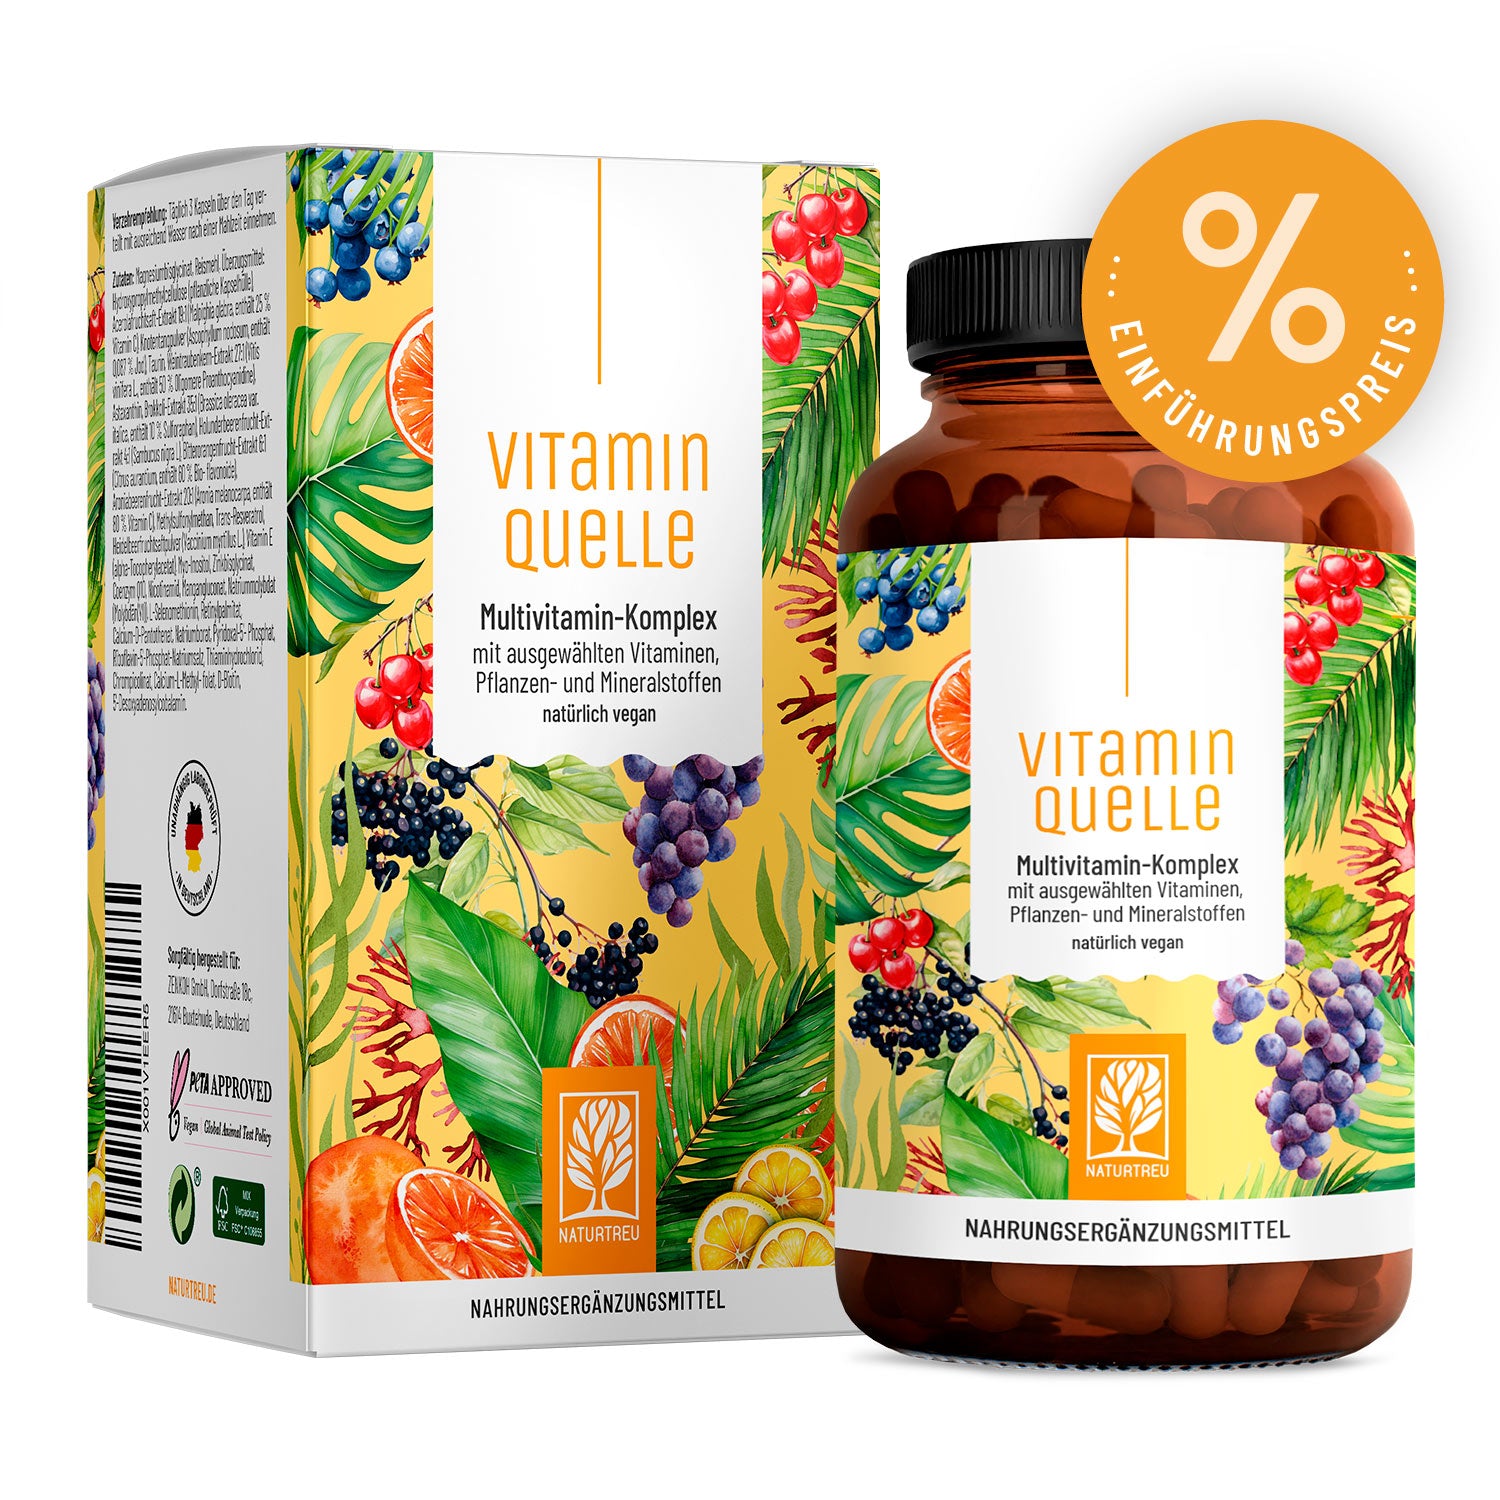 Vitaminquelle - Multivitamin-Komplex mit ausgewählten Vitaminen, Pflanzen- und Mineralstoffen von NATURTREU